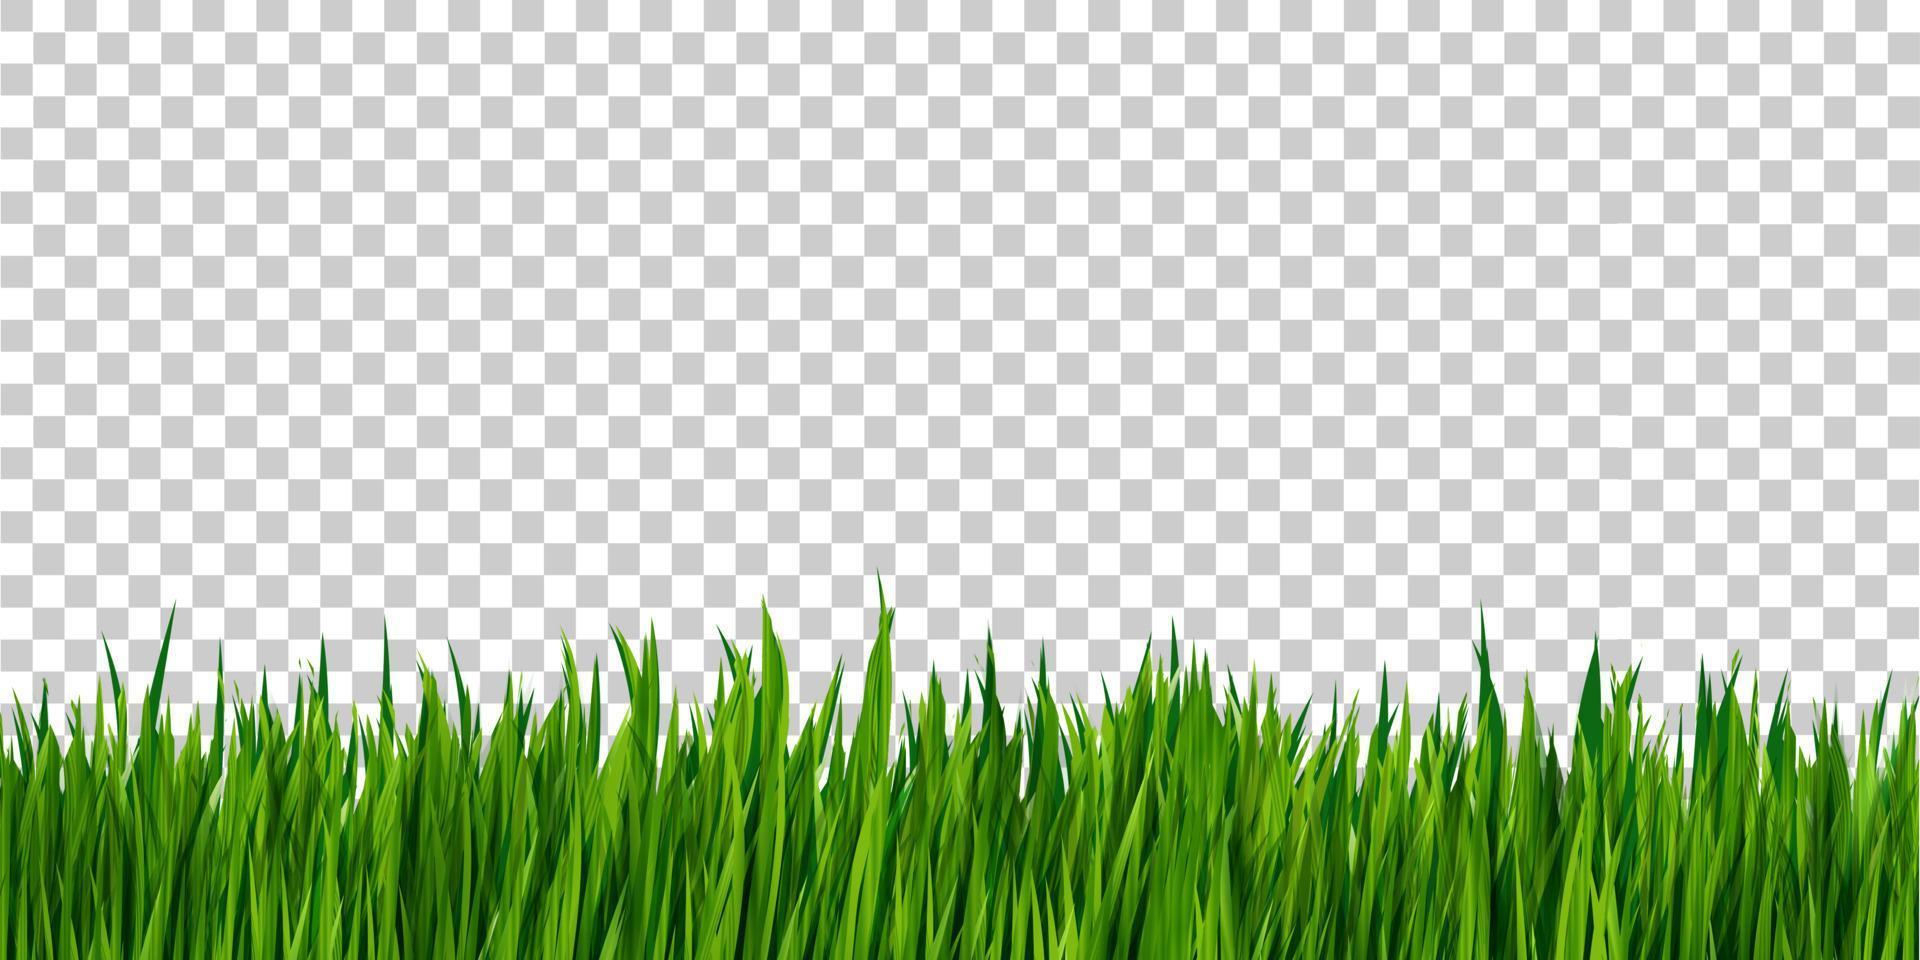 grönt gräs gränsen isolerad på transparent bakgrund, gräsfält vektor